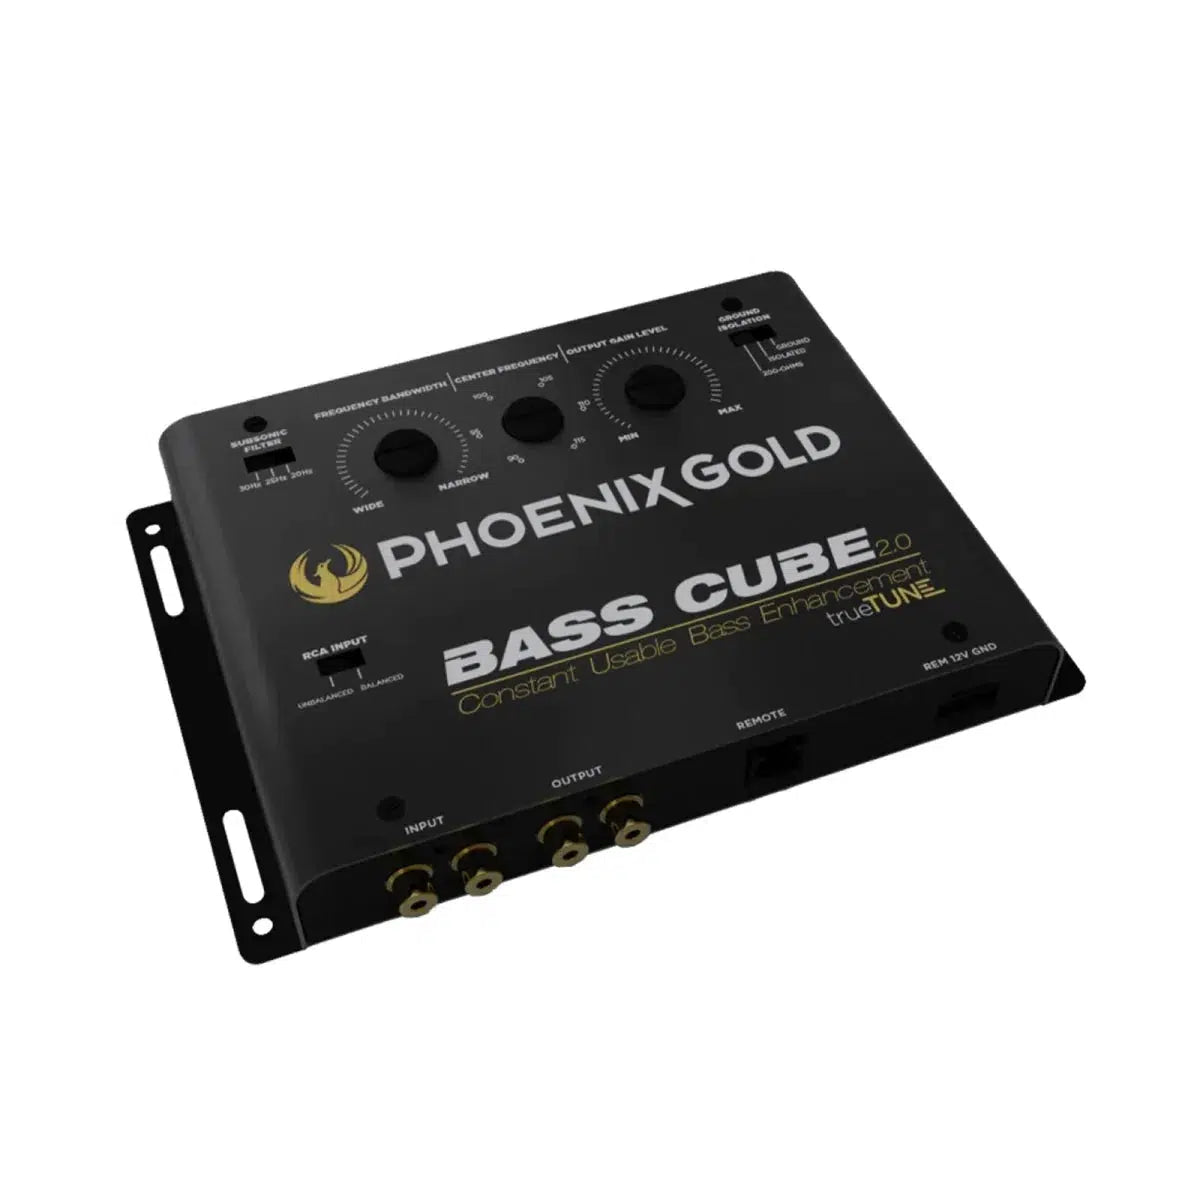 Phoenix Gold-BASSCUBE2.0-Adaptador de alta-baja-Masori.de